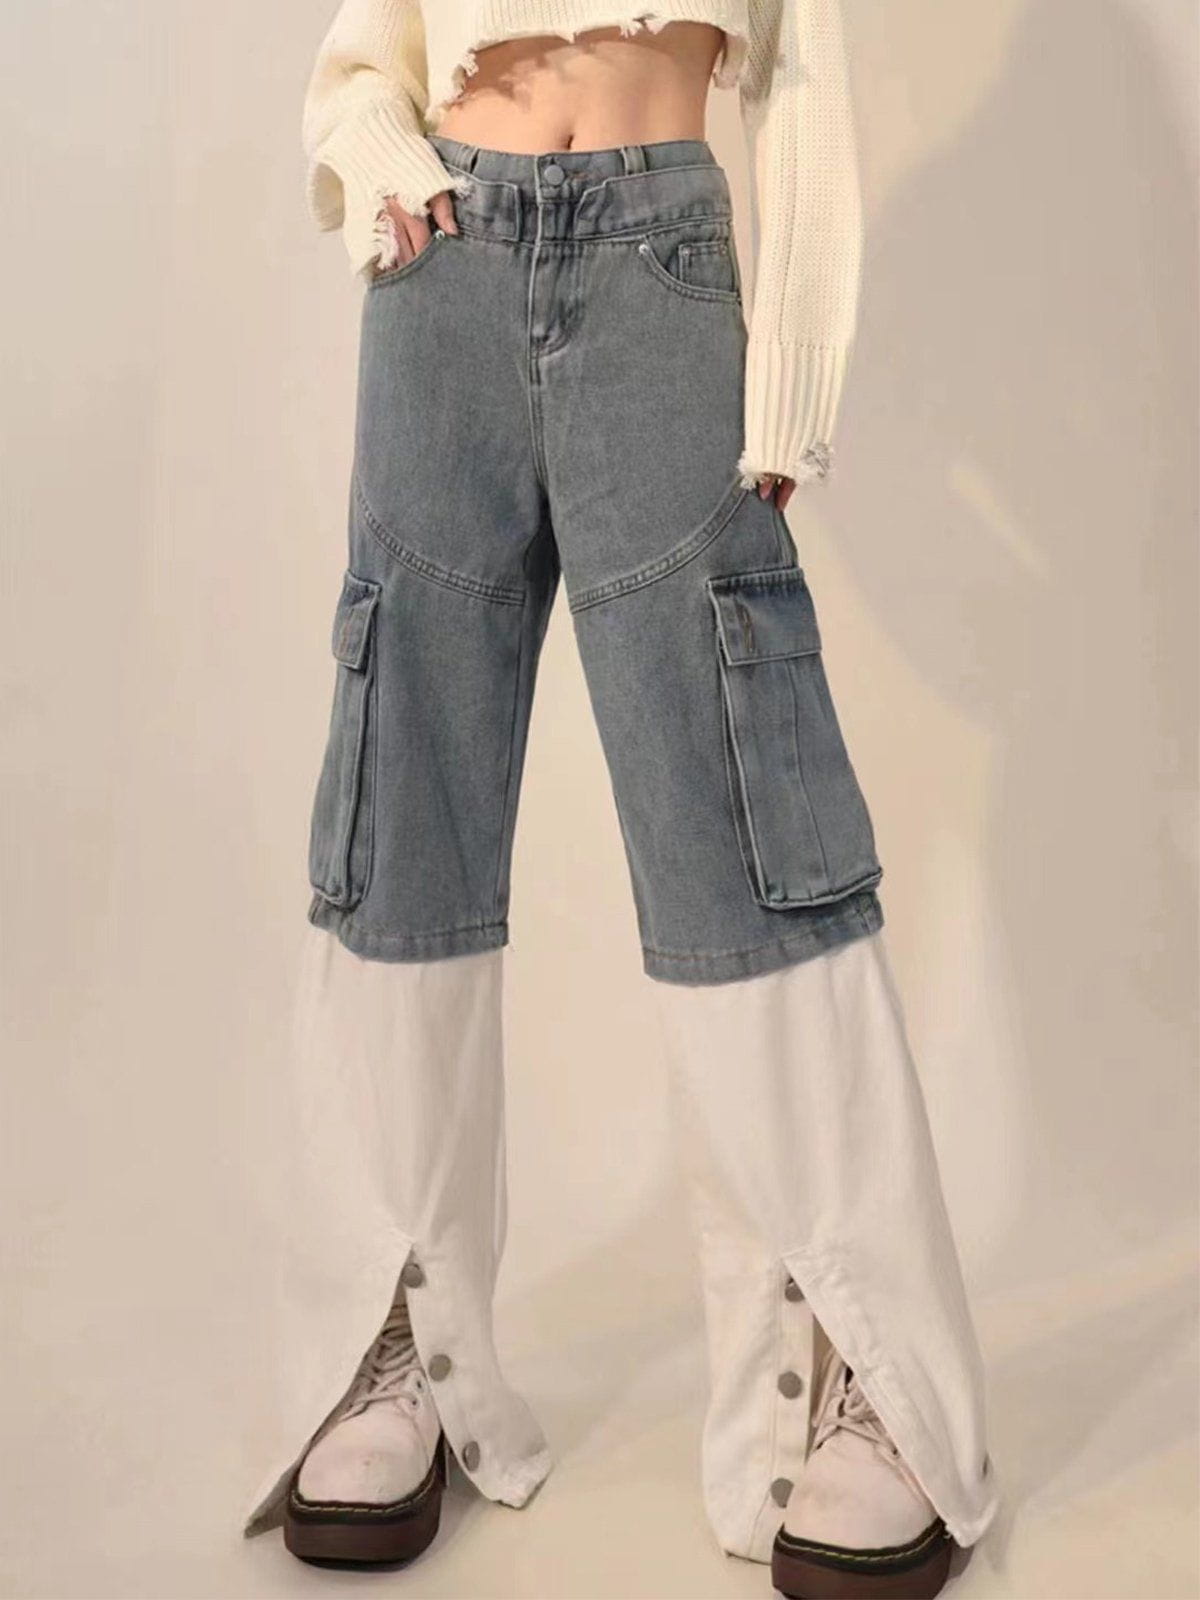 Eprezzy® - Multi-pocket Patchwork Jeans Streetwear Fashion - eprezzy.com